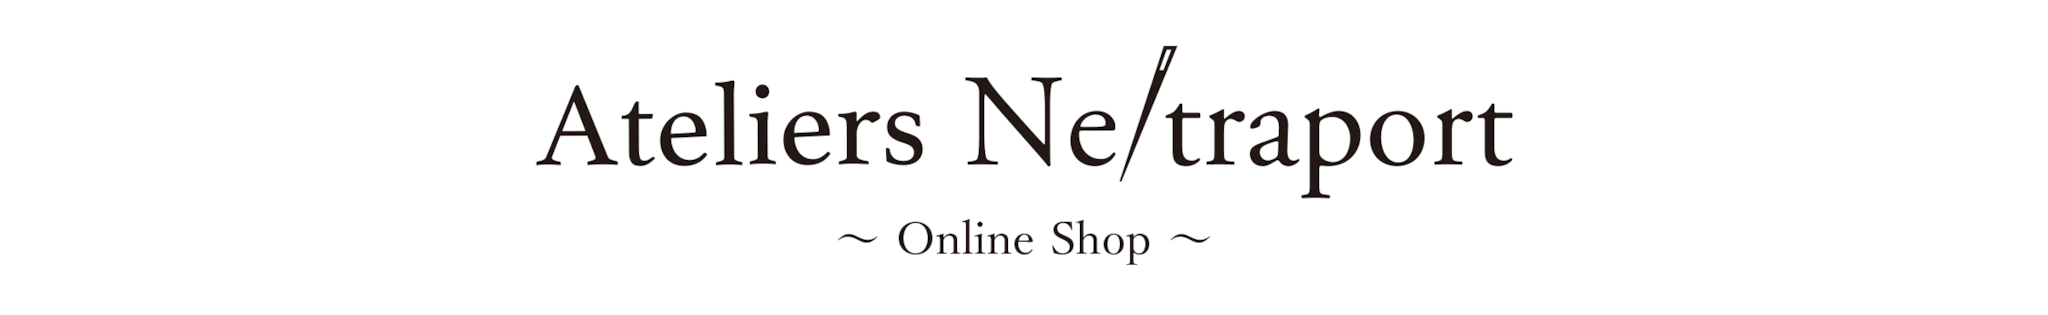 Ne/traport Online Shop